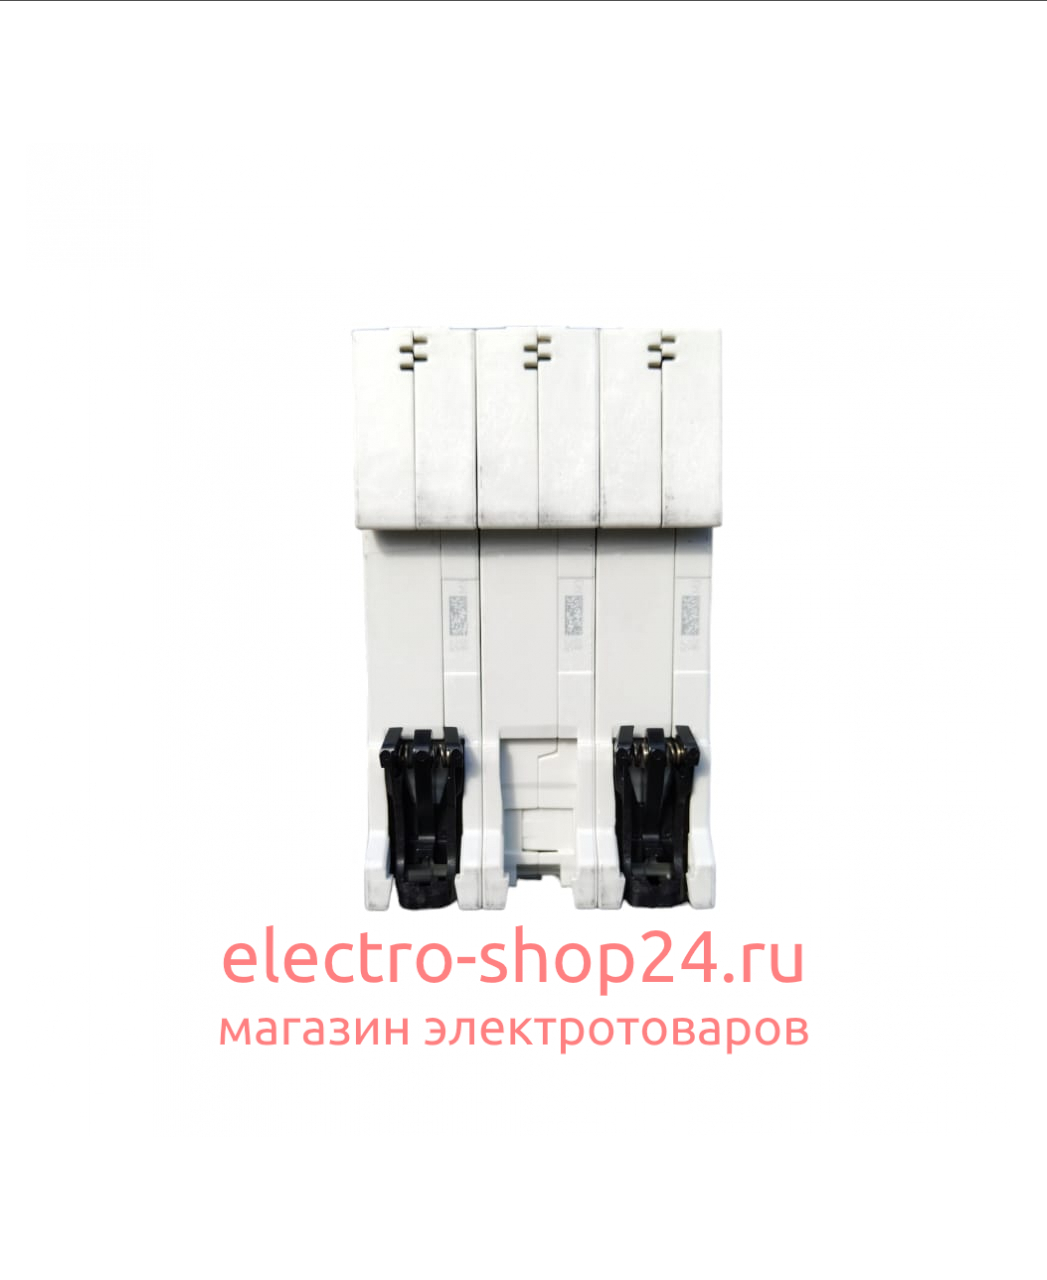 S203 C100 Автоматический выключатель 3-полюсный 100А 6кА (хар-ка C) ABB 2CDS253001R0824 2CDS253001R0824 - магазин электротехники Electroshop